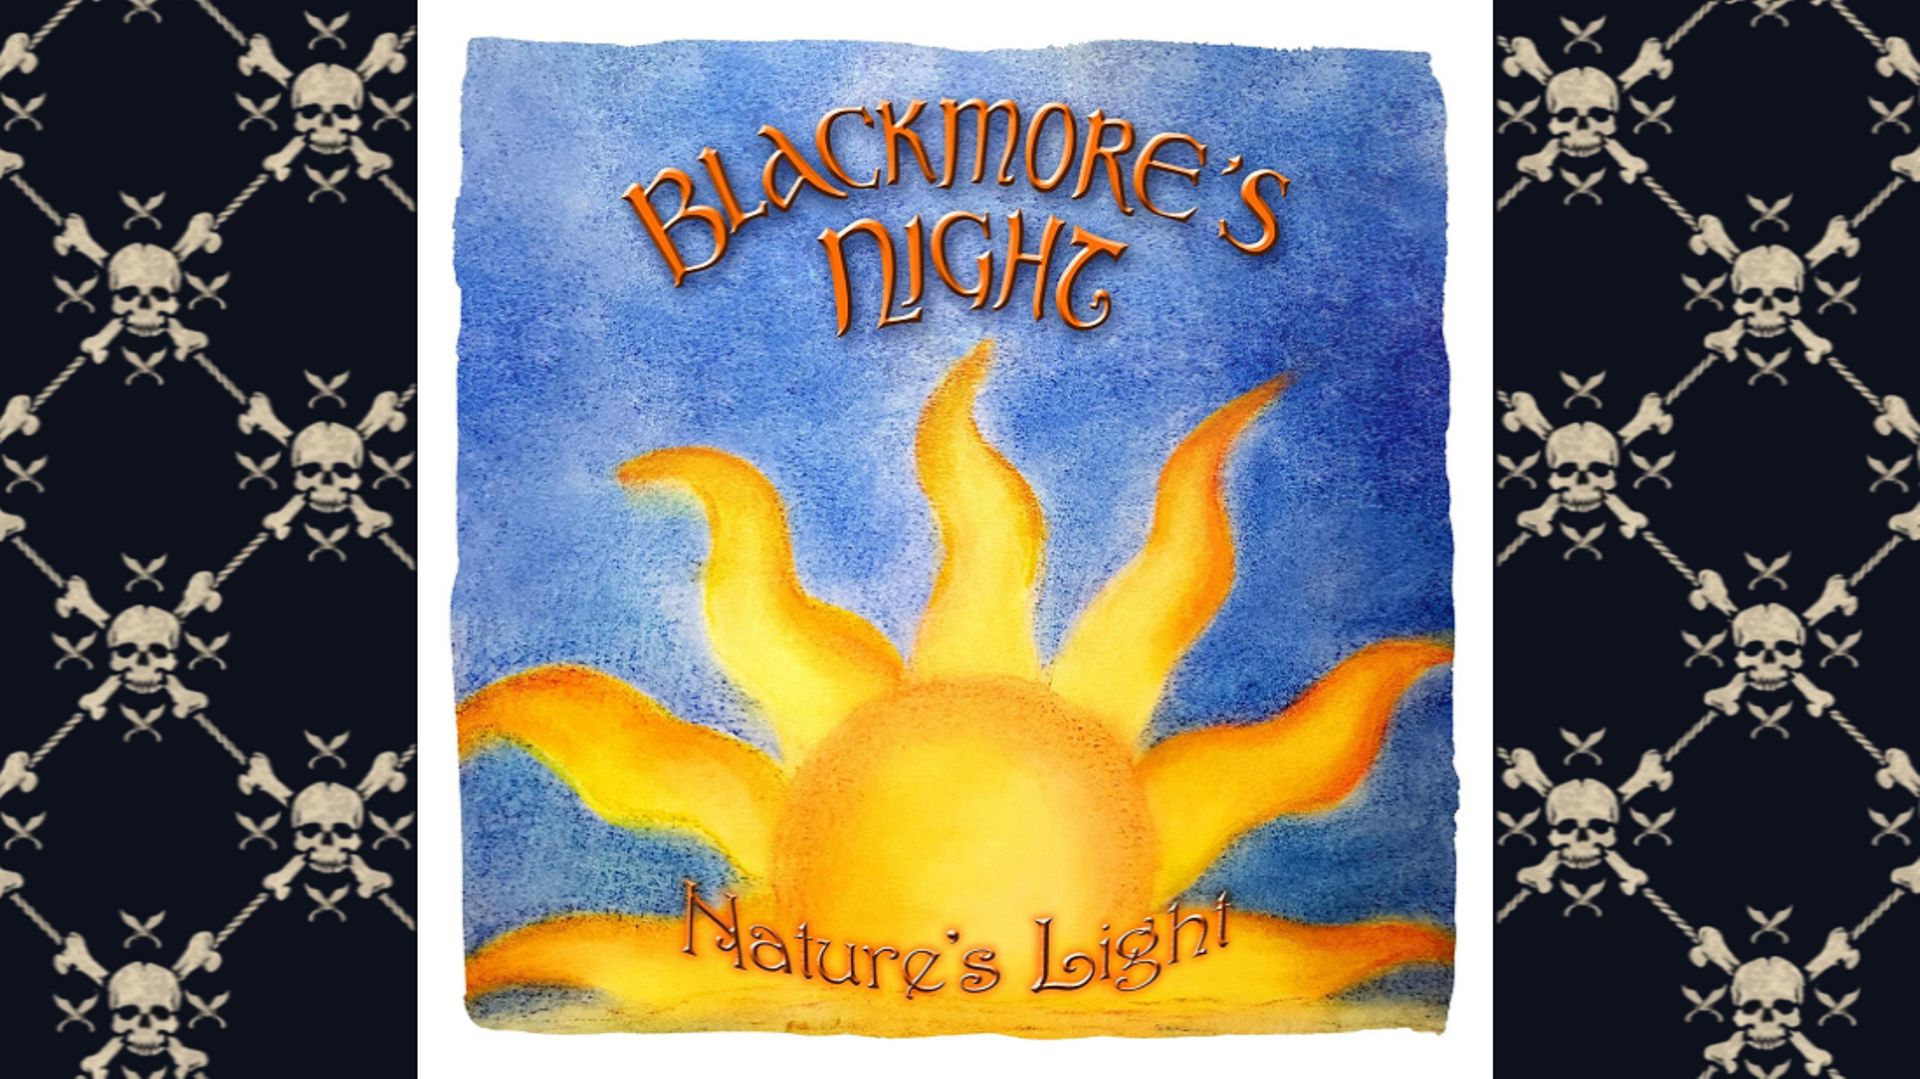 Barock Never Dies : Ritchie Blackmore, Blackmore’s Night et la musique Renaissance